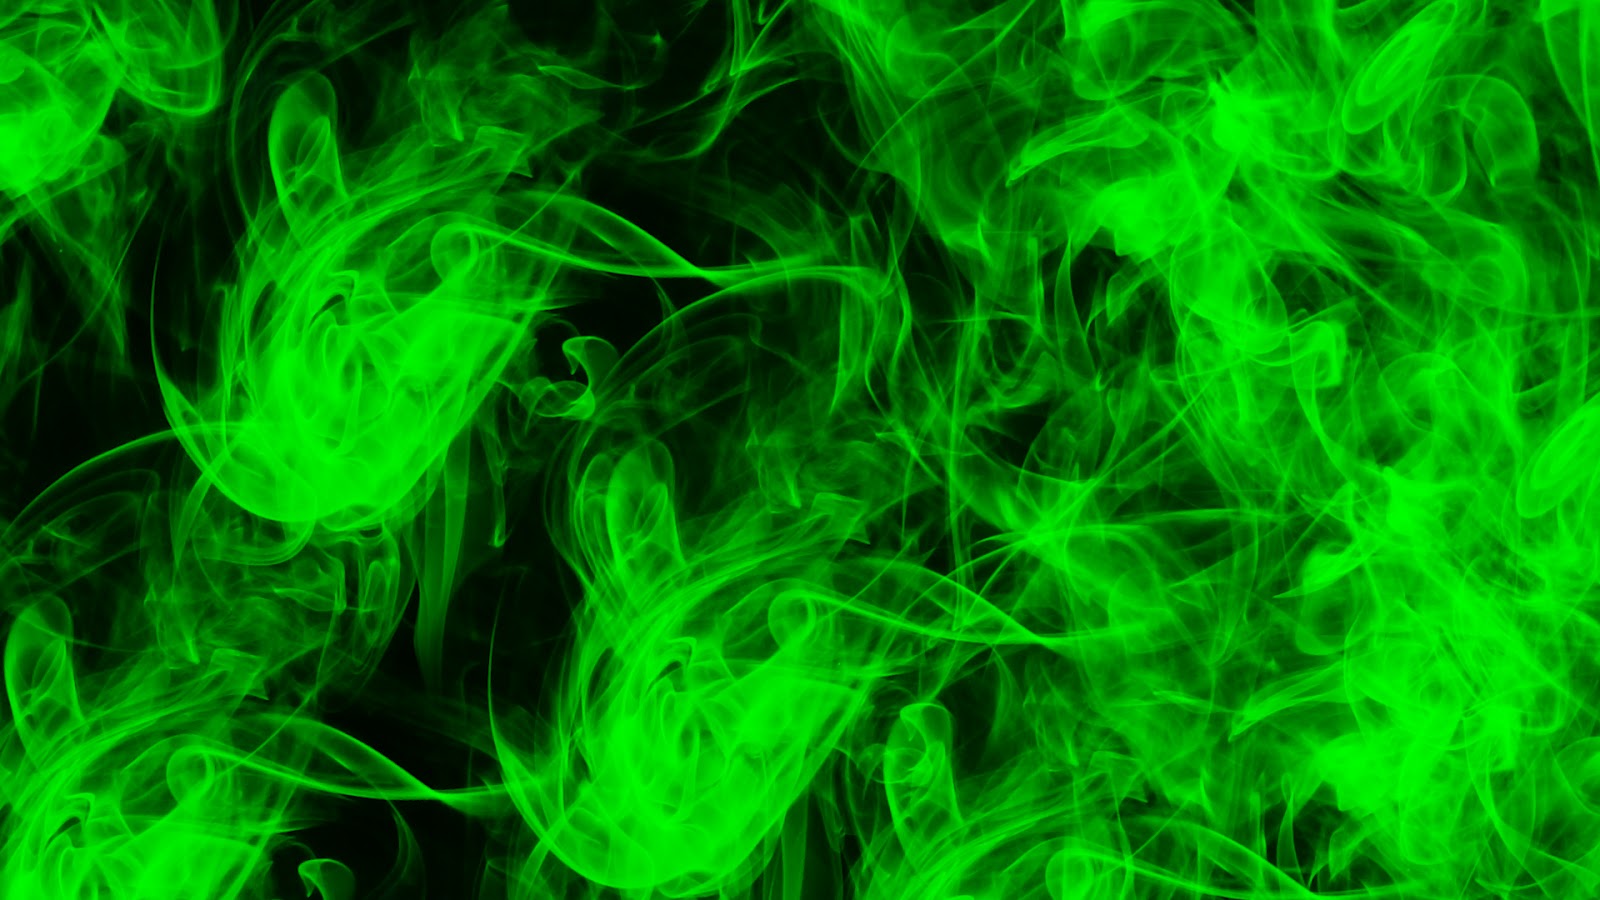 Lime Green Fire Abstract Desktop   1600x900 iWallHD   Wallpaper HD